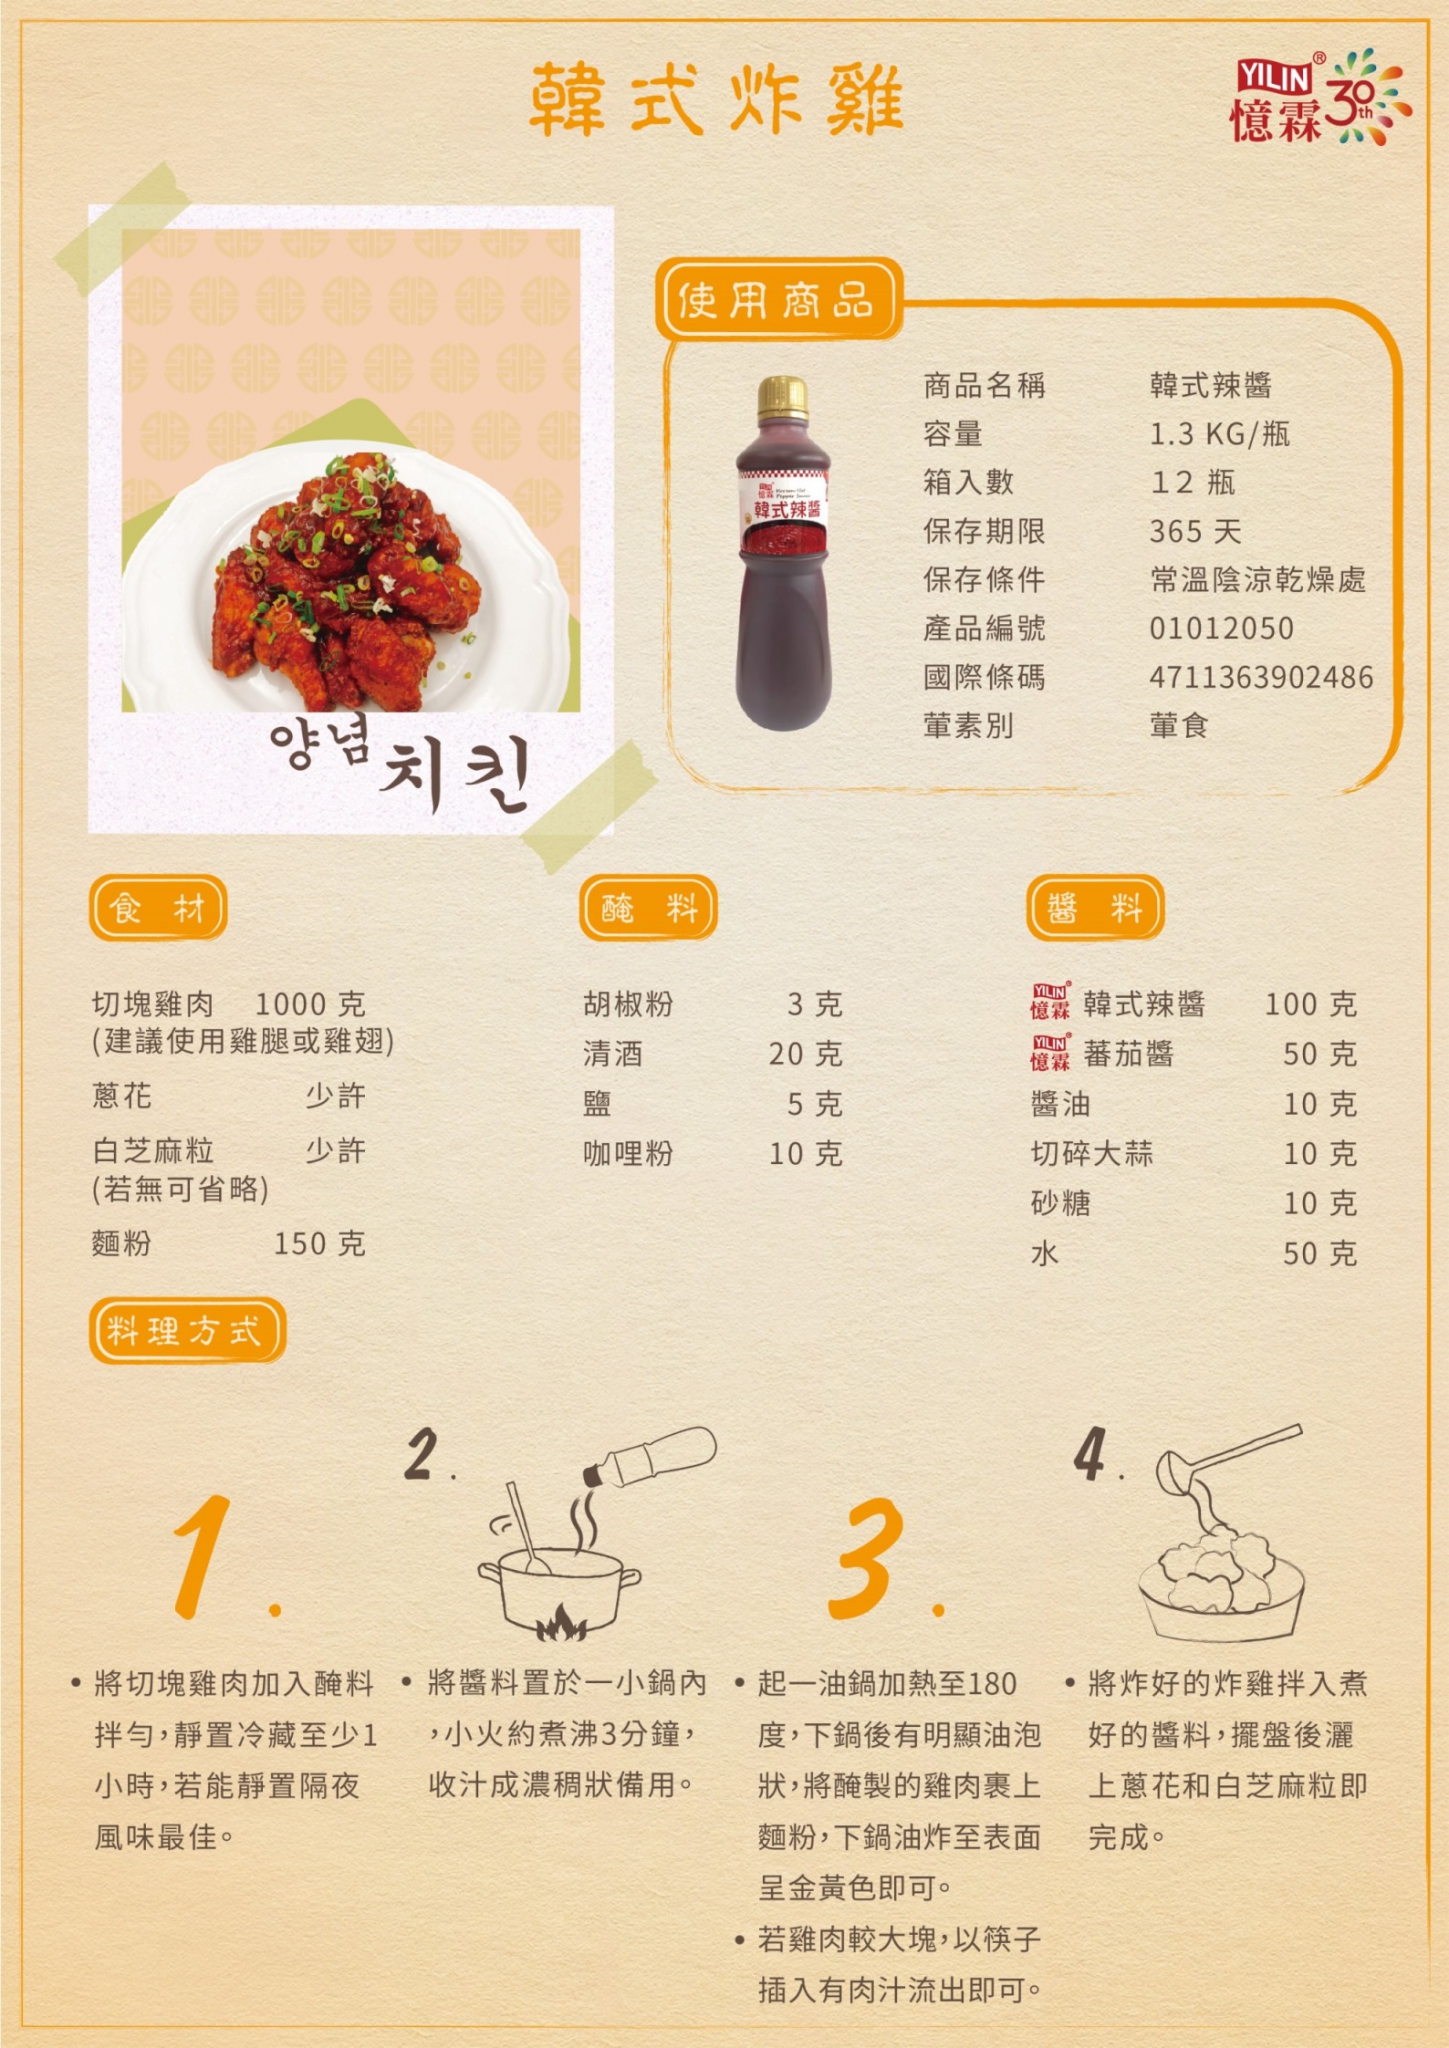 韓式炸雞食譜